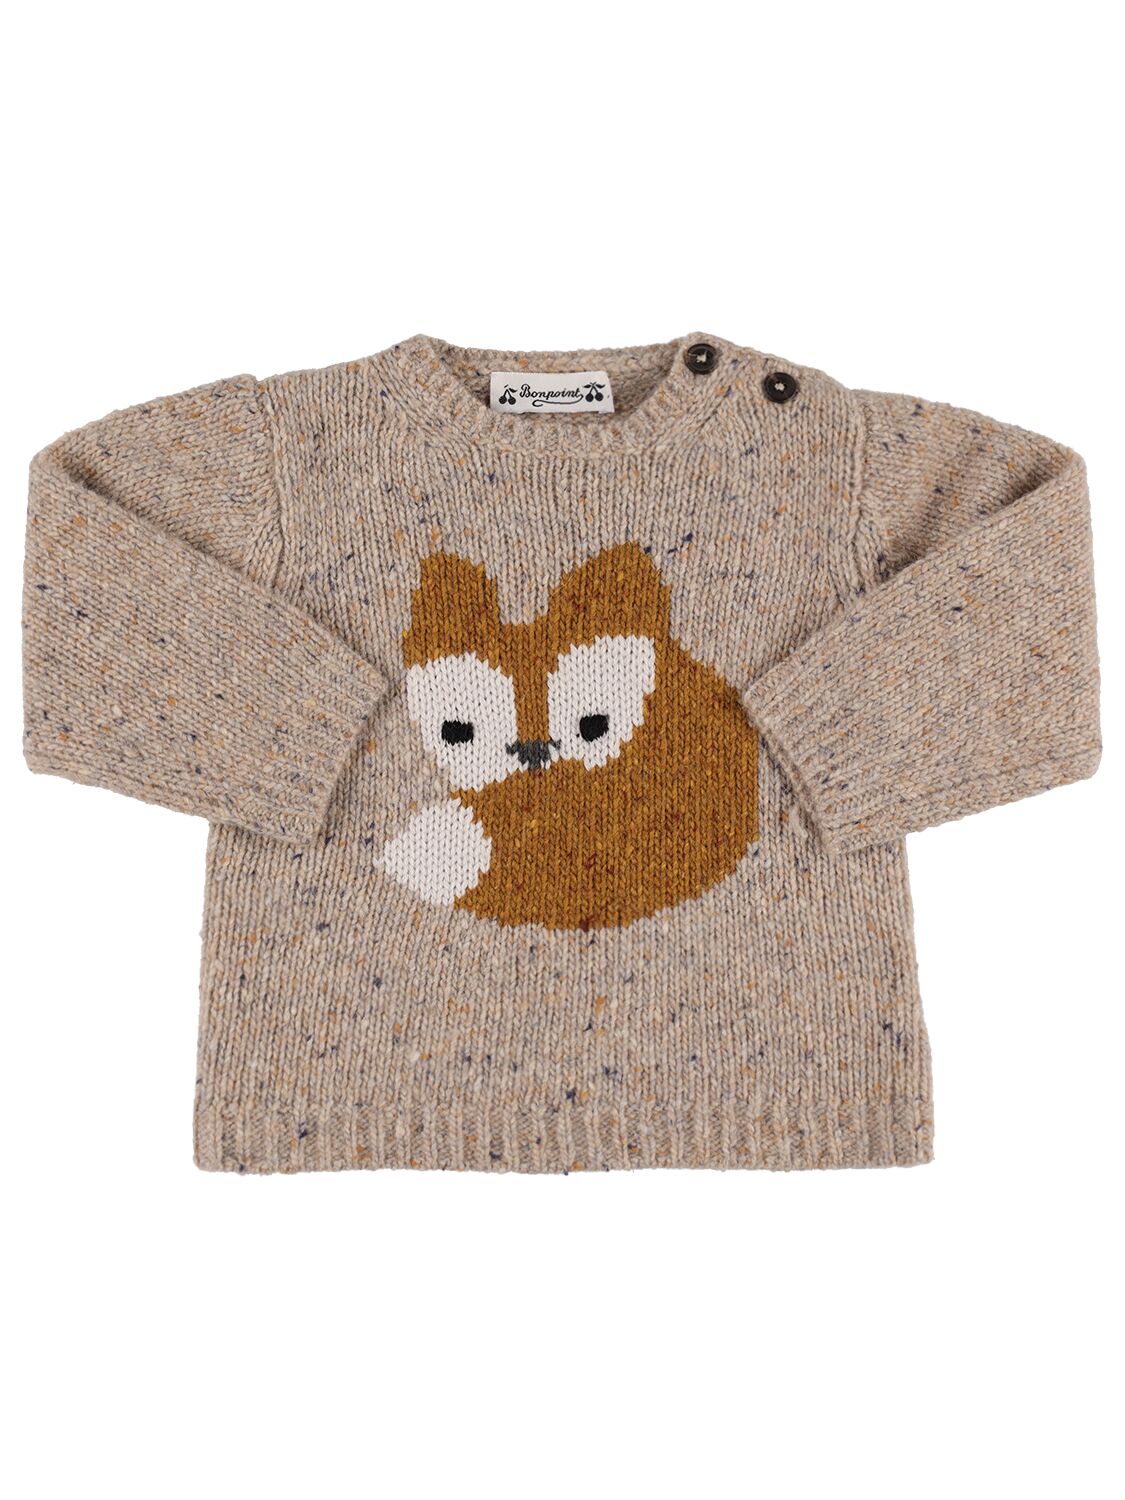 Bonpoint Kids' Blumaro Wool Blend Sweater In Muticolor